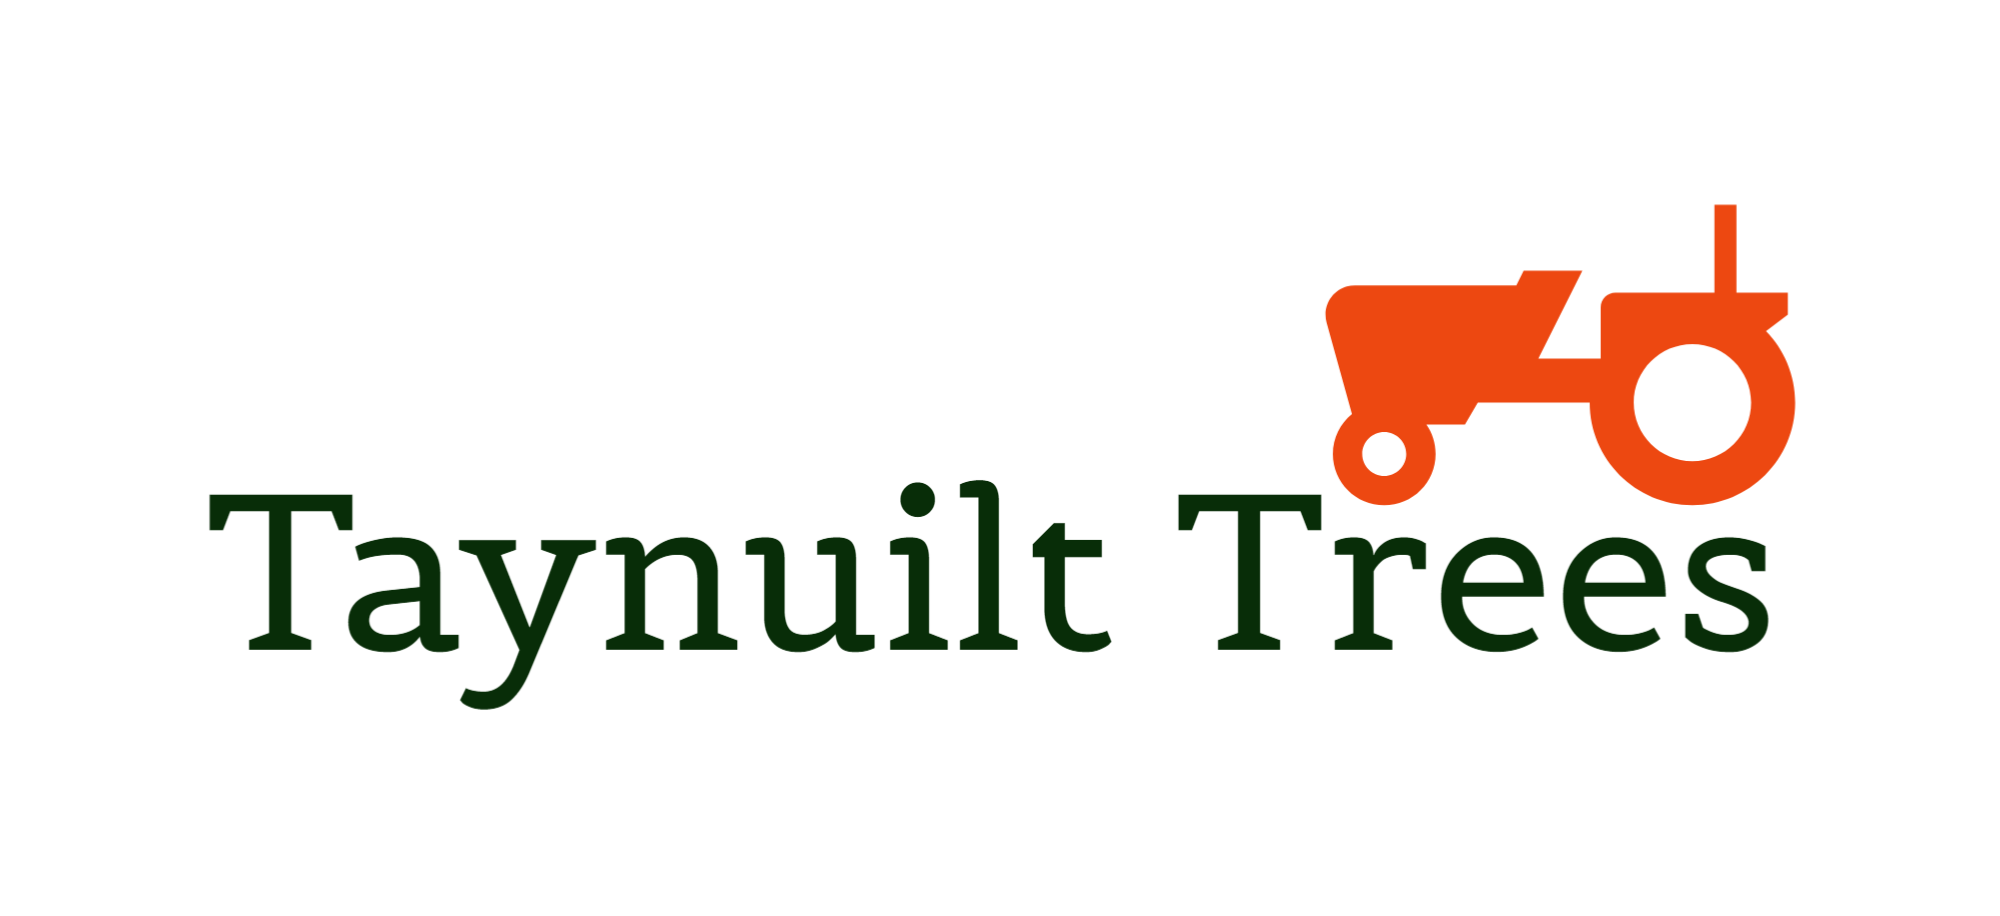 Taynuilt Trees